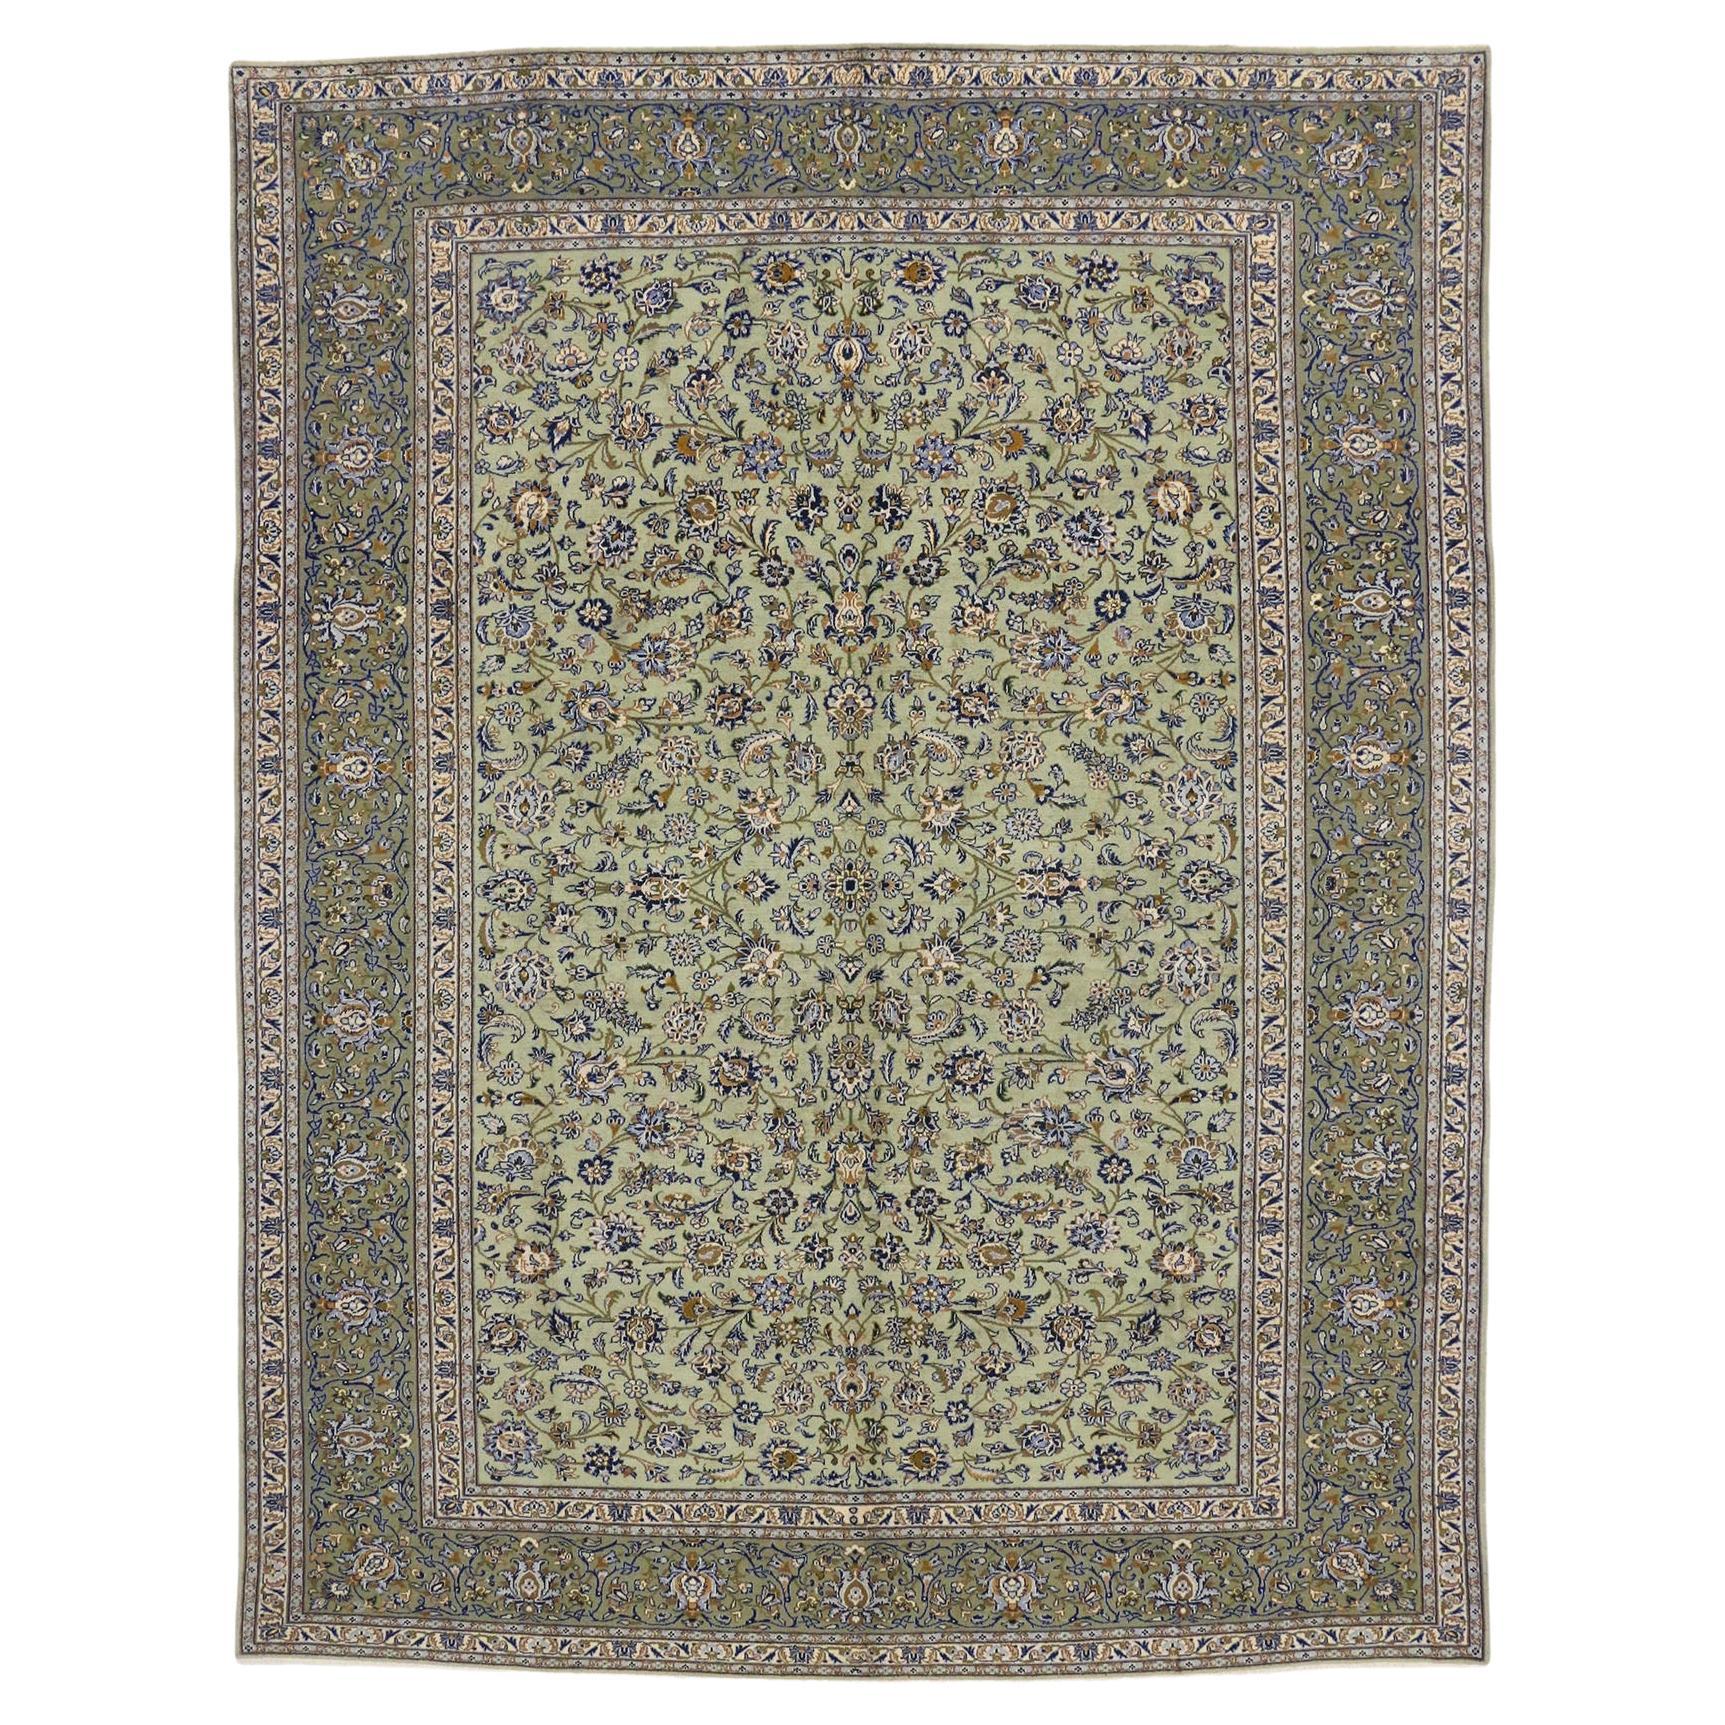 Altpersischer Yazd-Teppich im französischen Landhausstil